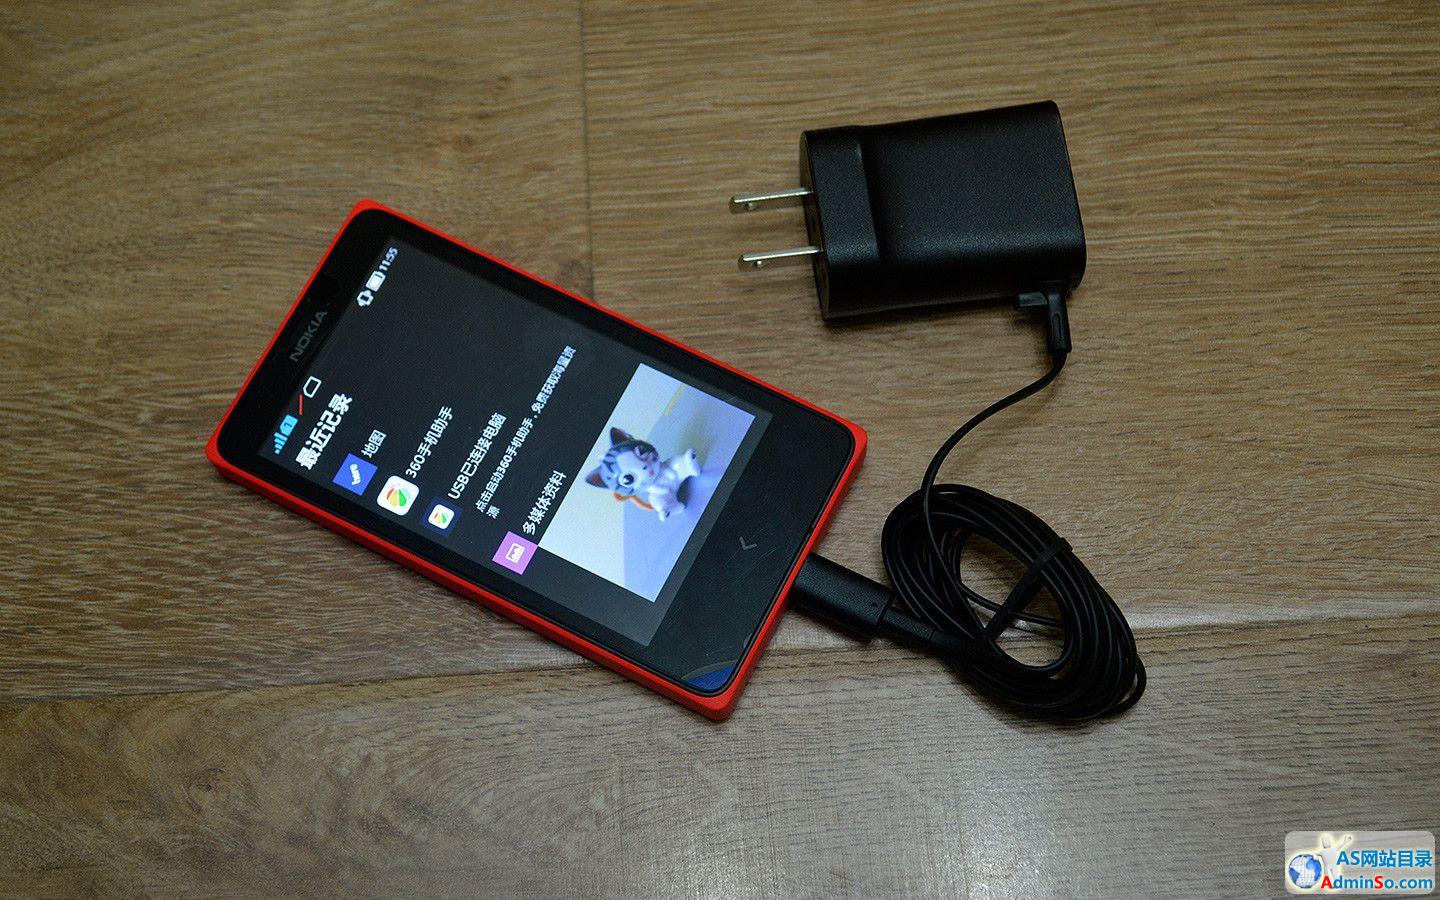 599元诺基亚首款Android机 Nokia X评测 